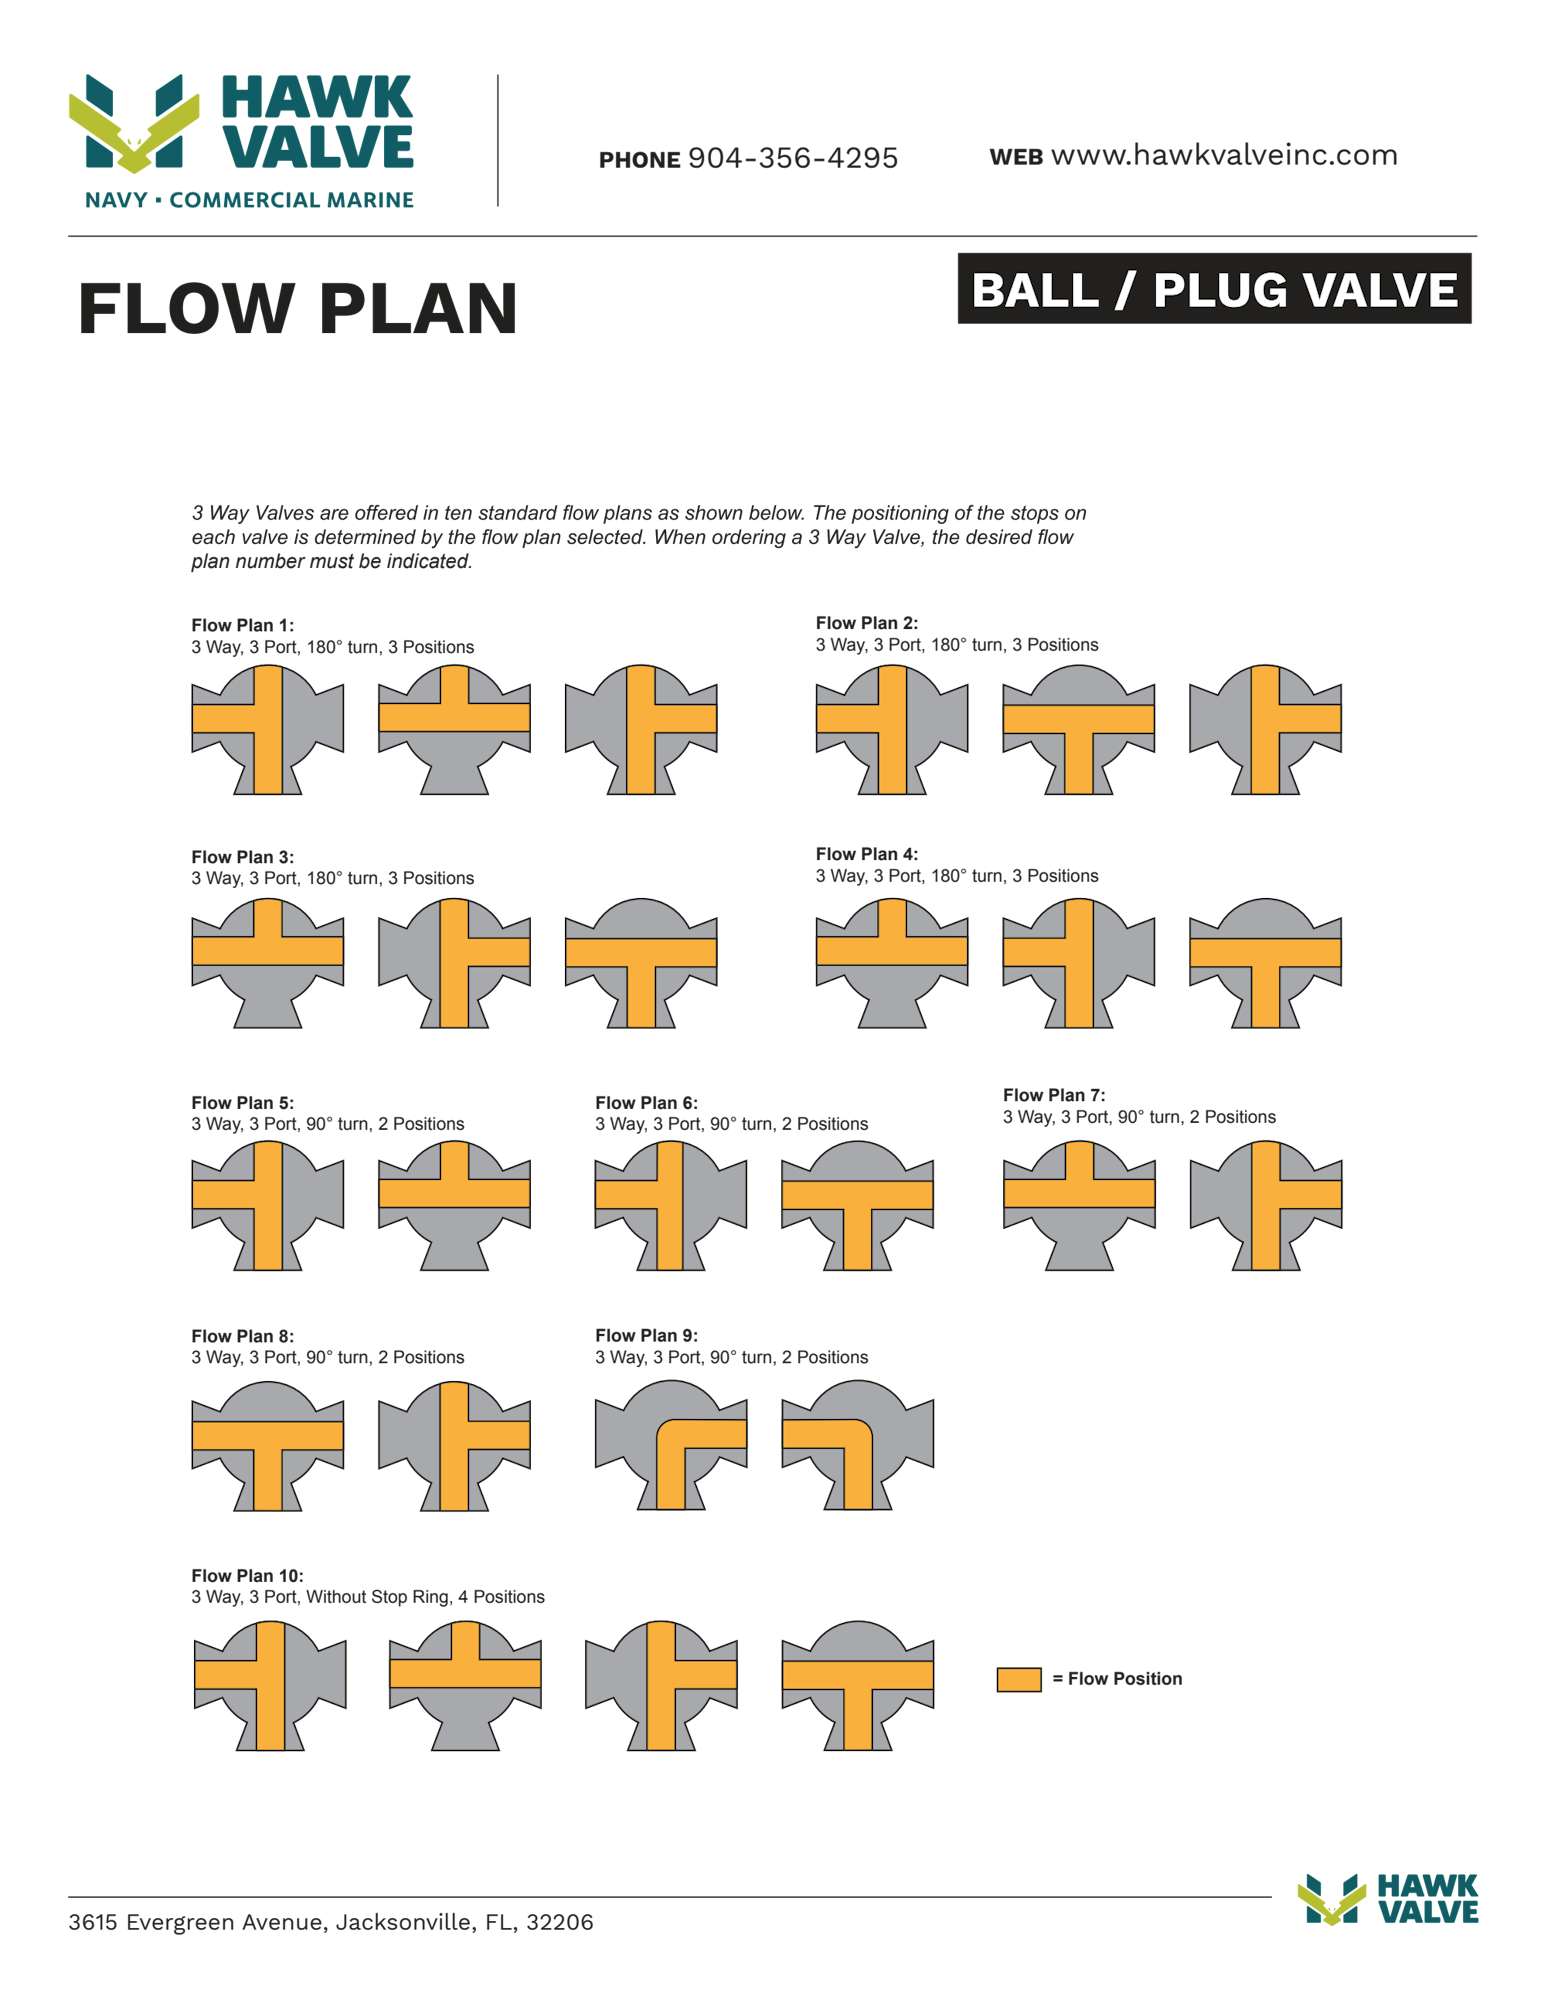 Ball-flow-plan.pdf